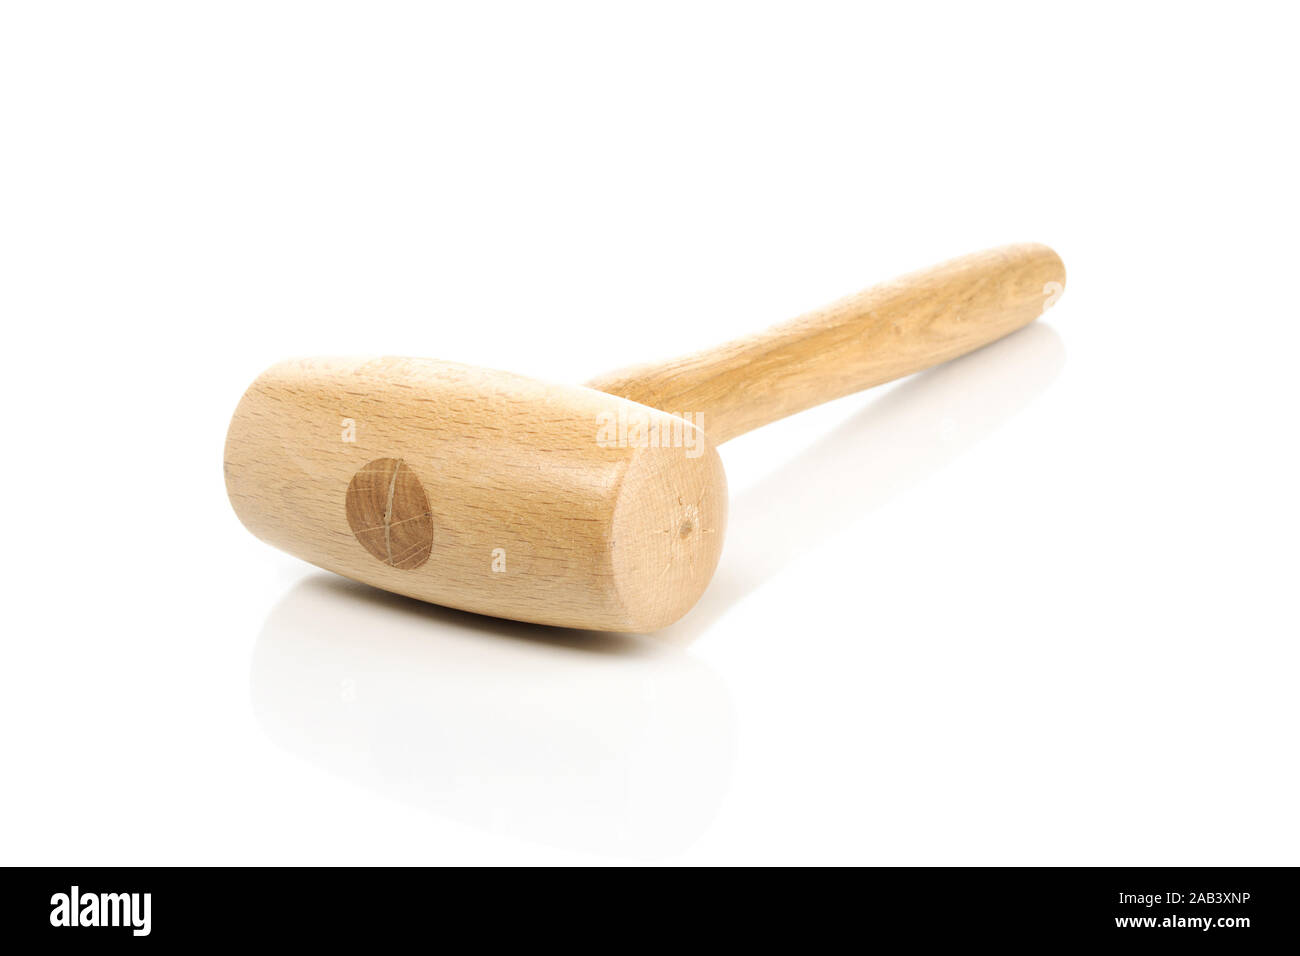 Holzhammer |Wooden mallet| Stock Photo